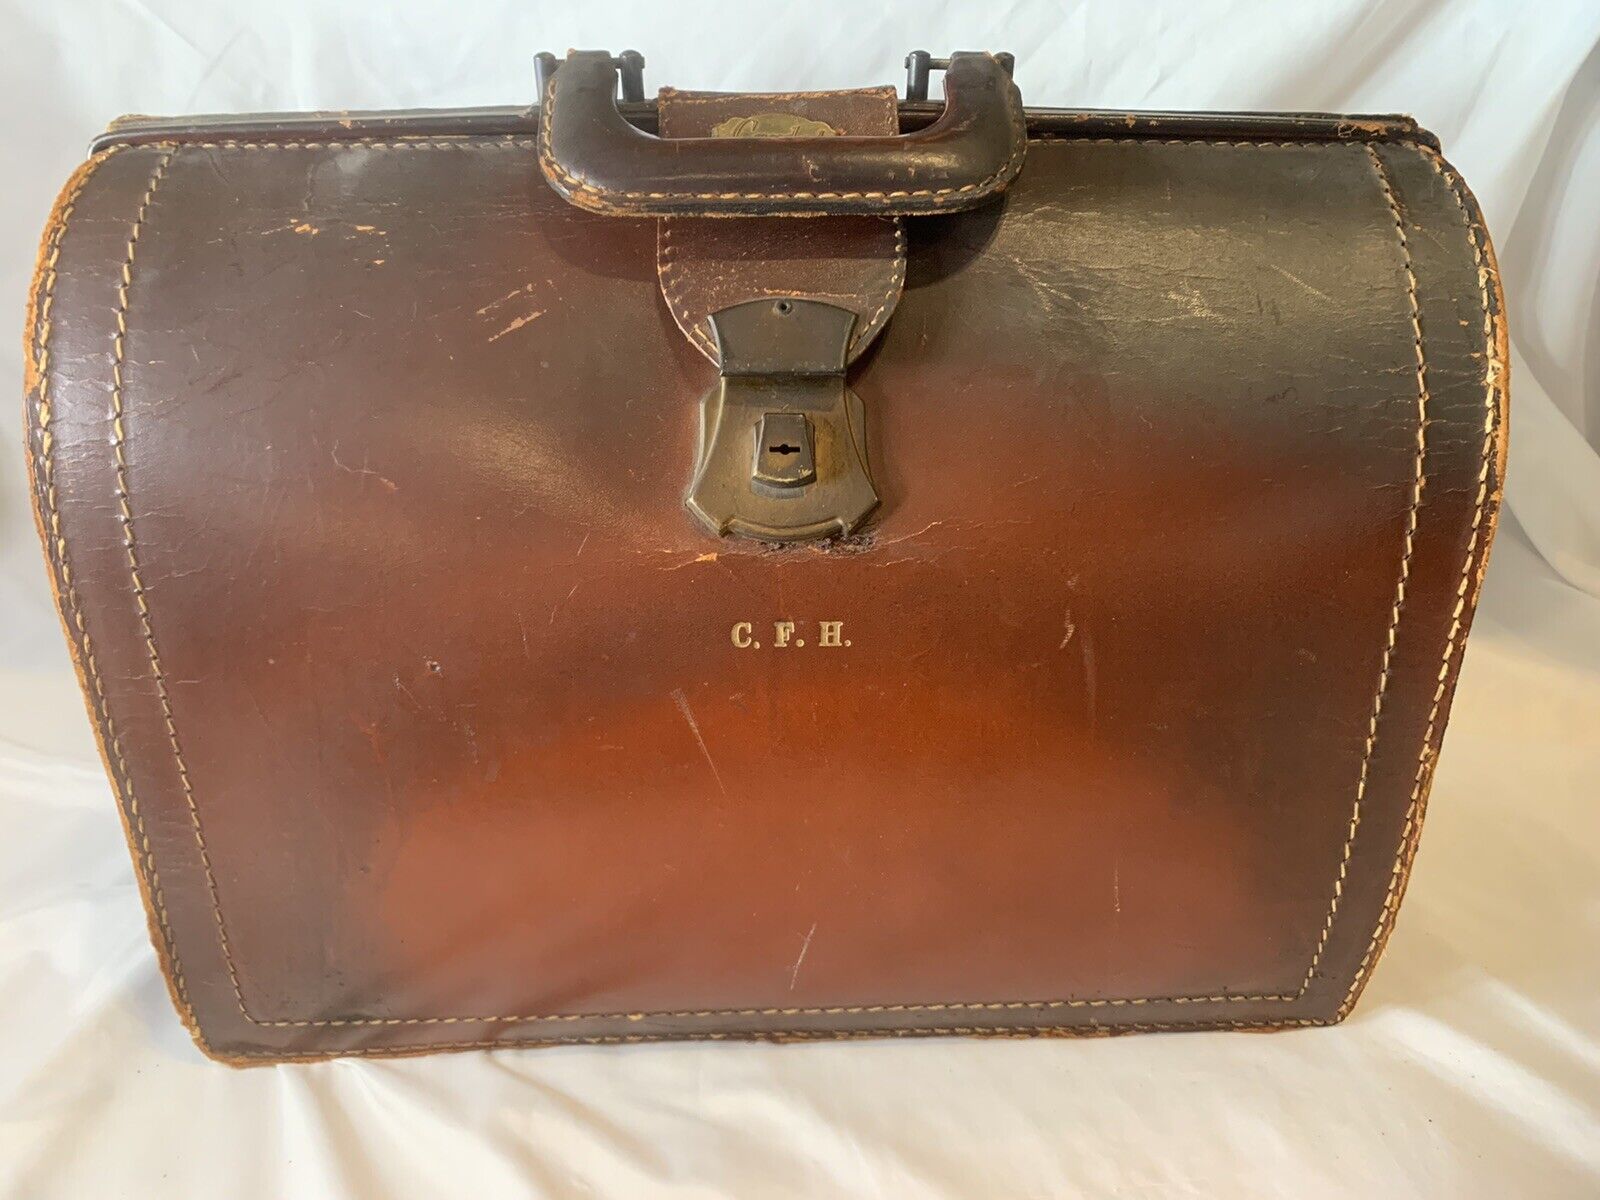 Vintage Cardat Leather Medical Doctor Bag Monogramed C.f.h. Brown Rust Color